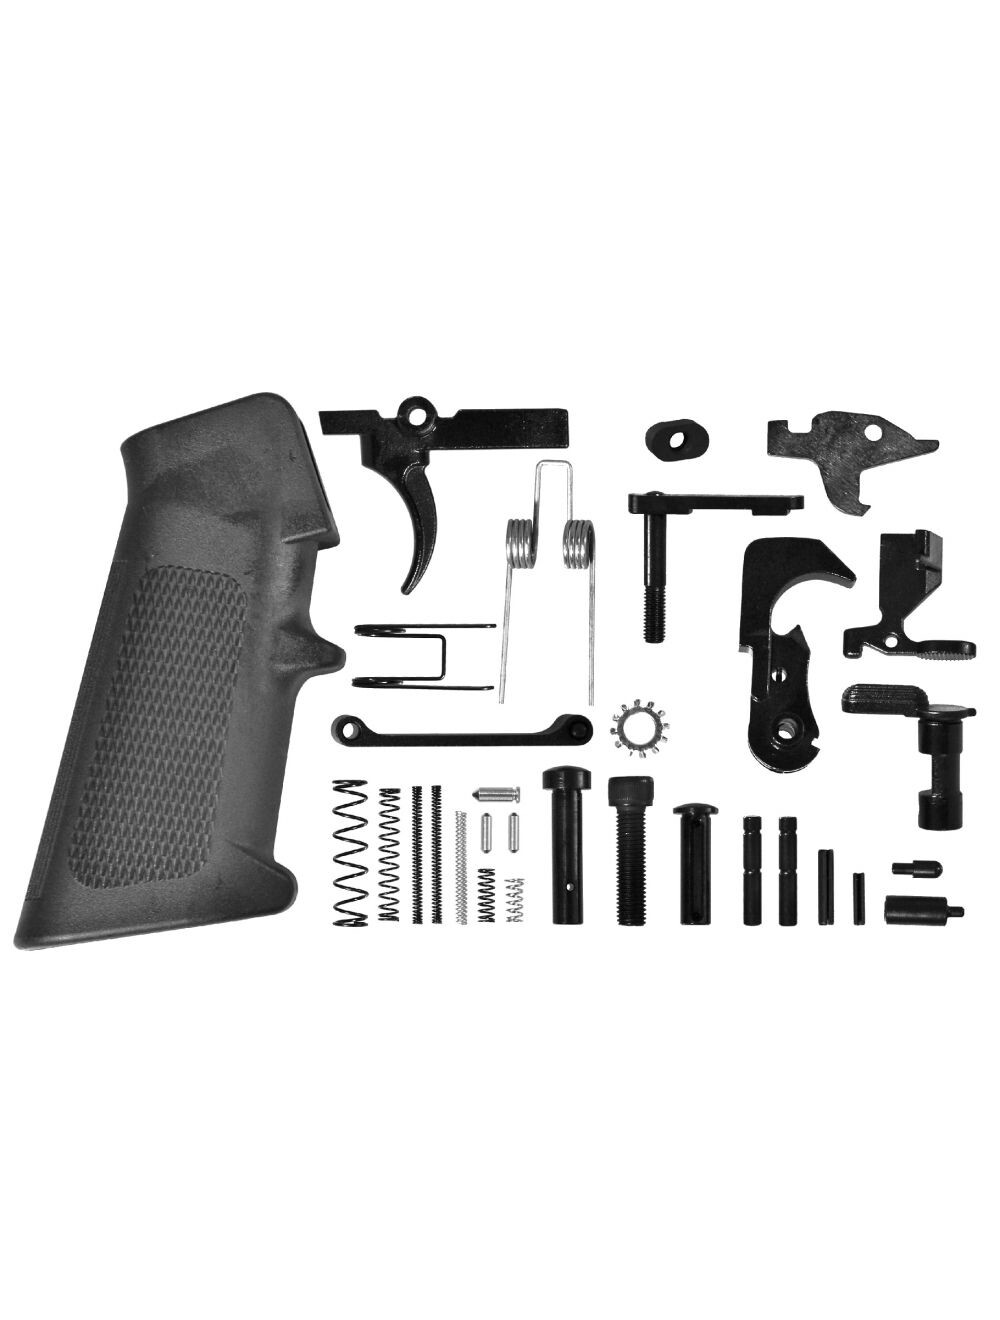 🔥🔥🔥🔥 FLASH SALE AR-15 Lower Parts Kit